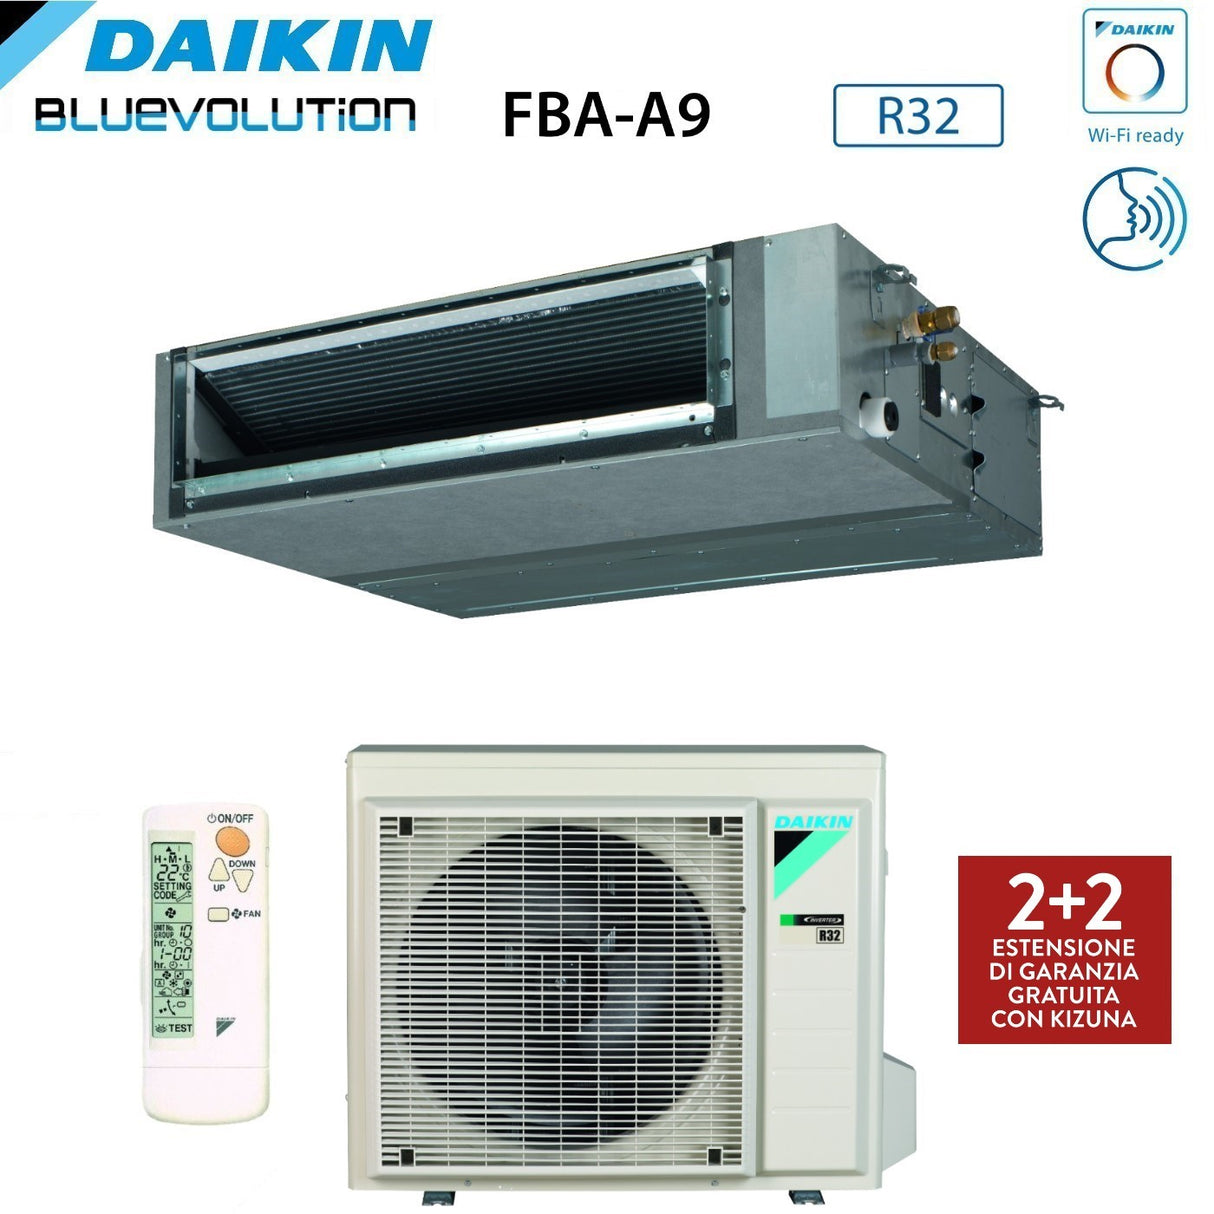 immagine-4-daikin-climatizzatore-condizionatore-daikin-bluevolution-canalizzato-media-prevalenza-18000-btu-fba50a-monofase-r-32-wi-fi-optional-garanzia-italiana